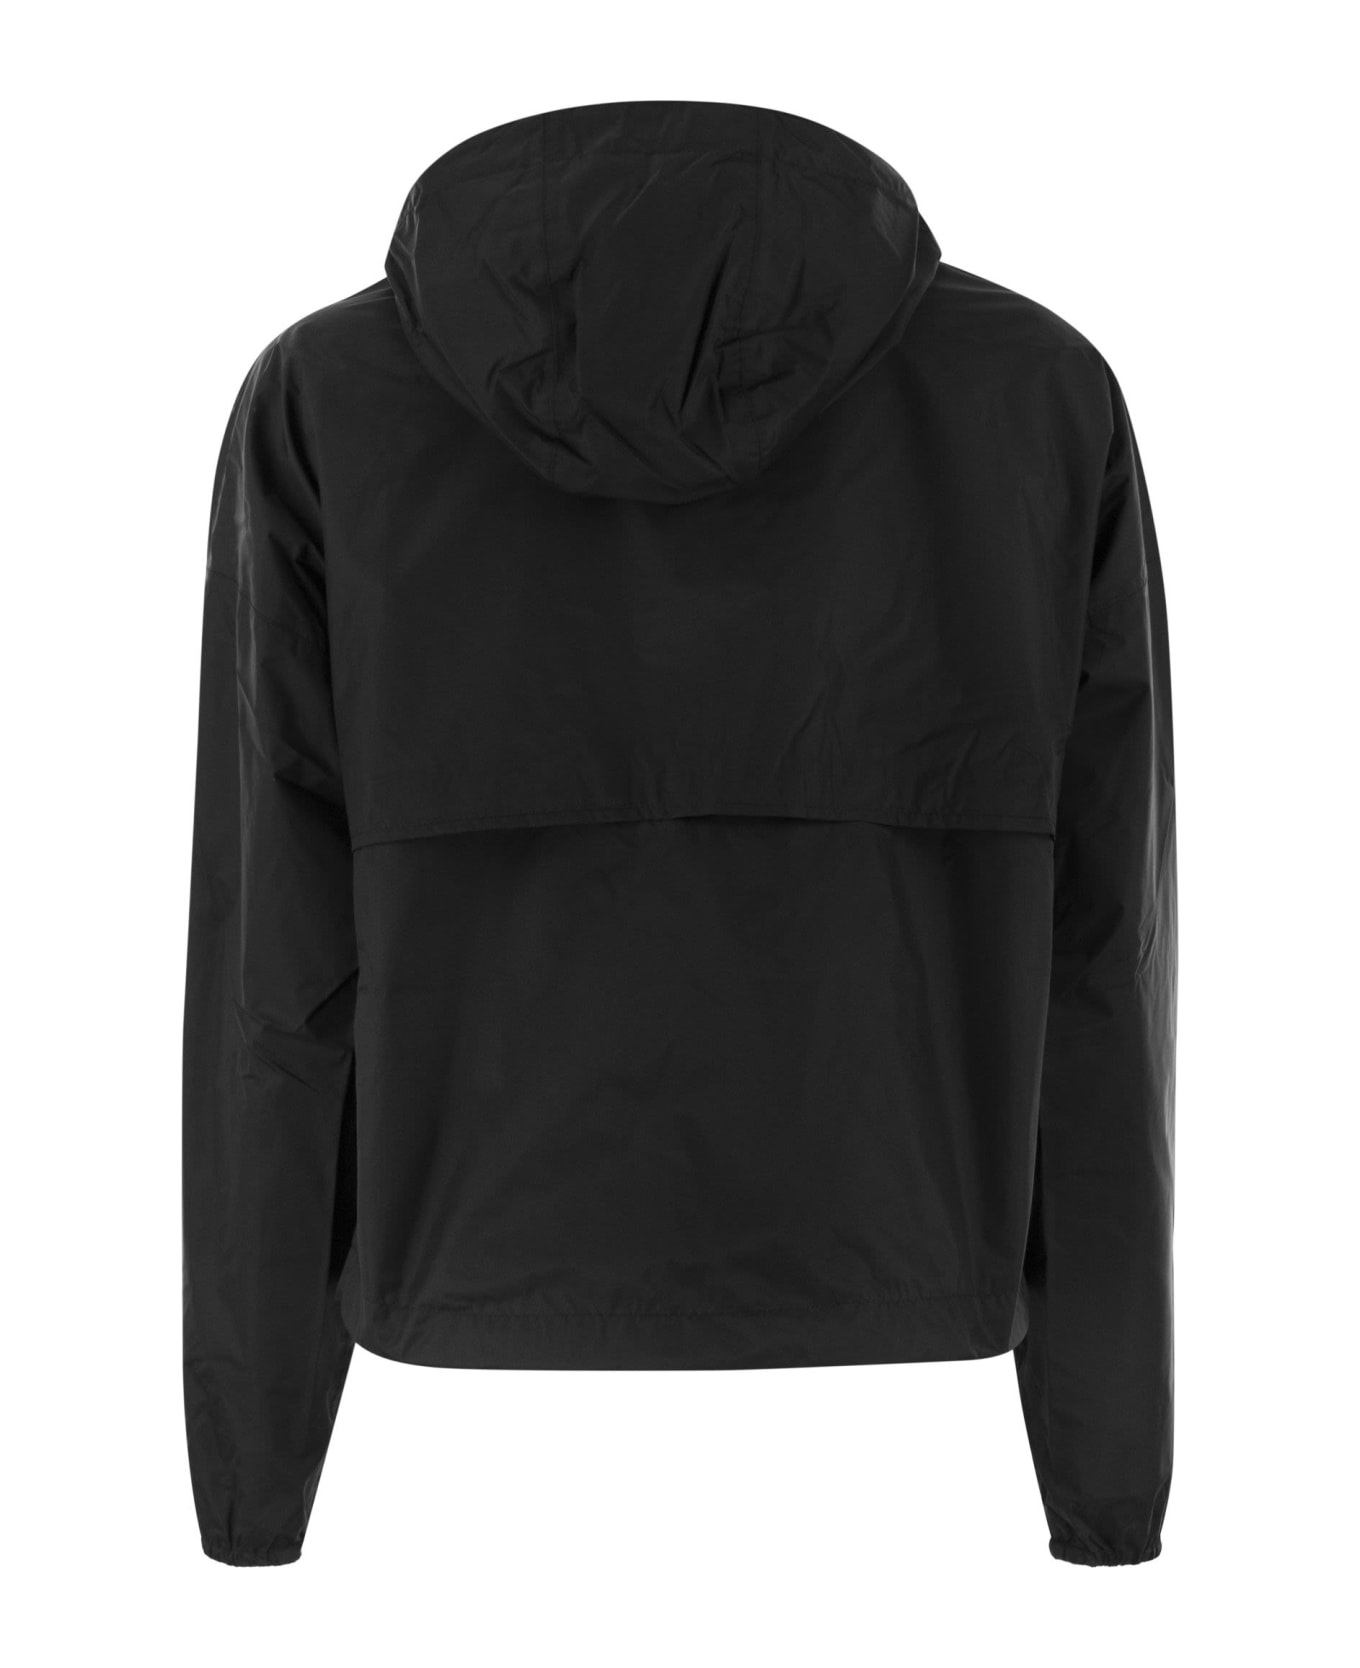 K-Way Laurette Plus - Reversible Hooded Jacket - Black/beige